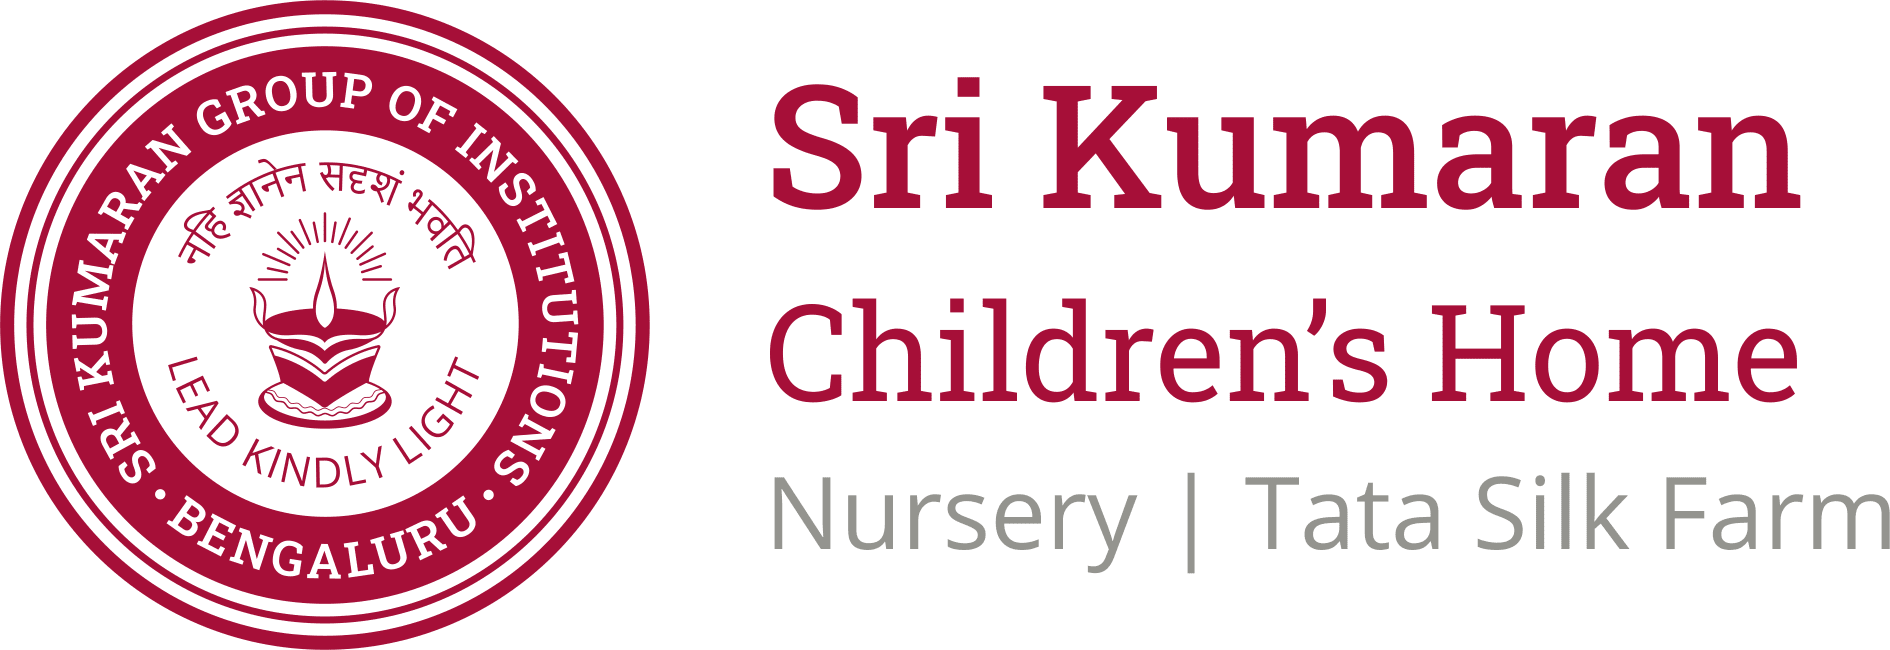 Sri Kumaran Childrens Home - Nuresry | Tata Silk Farm